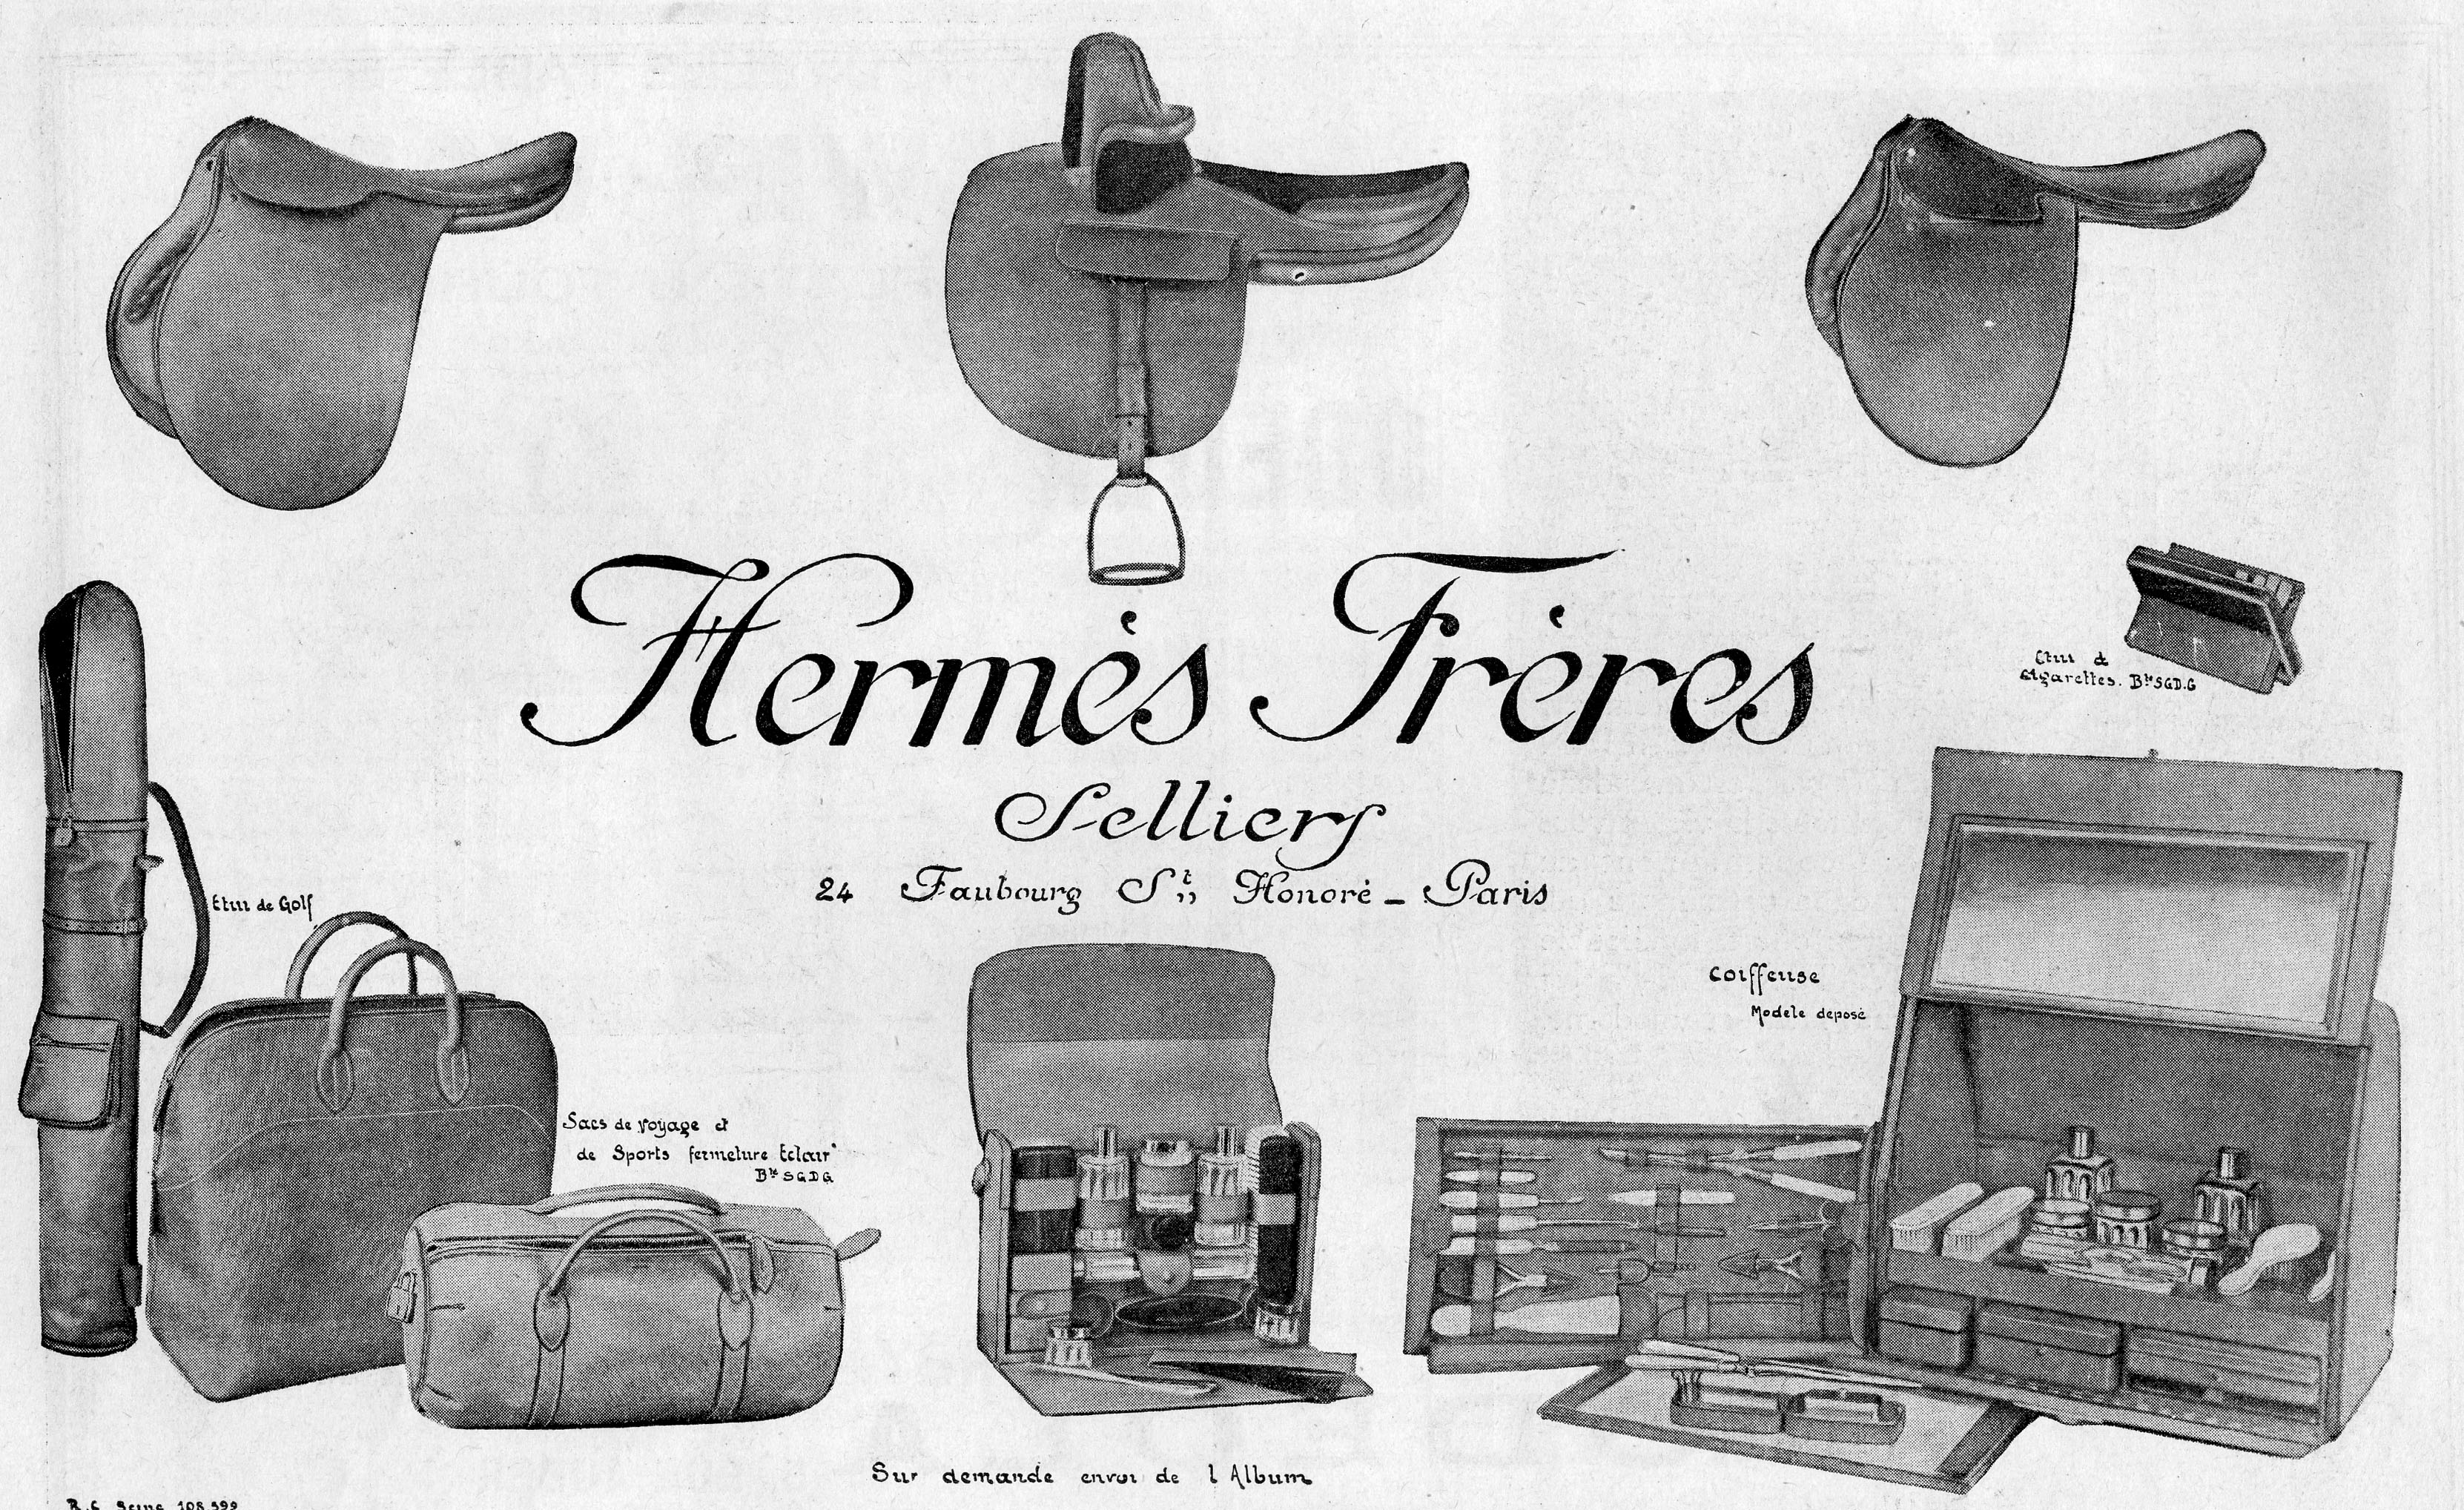 Hermès-1923 vintage ads luxury goods manufacturer